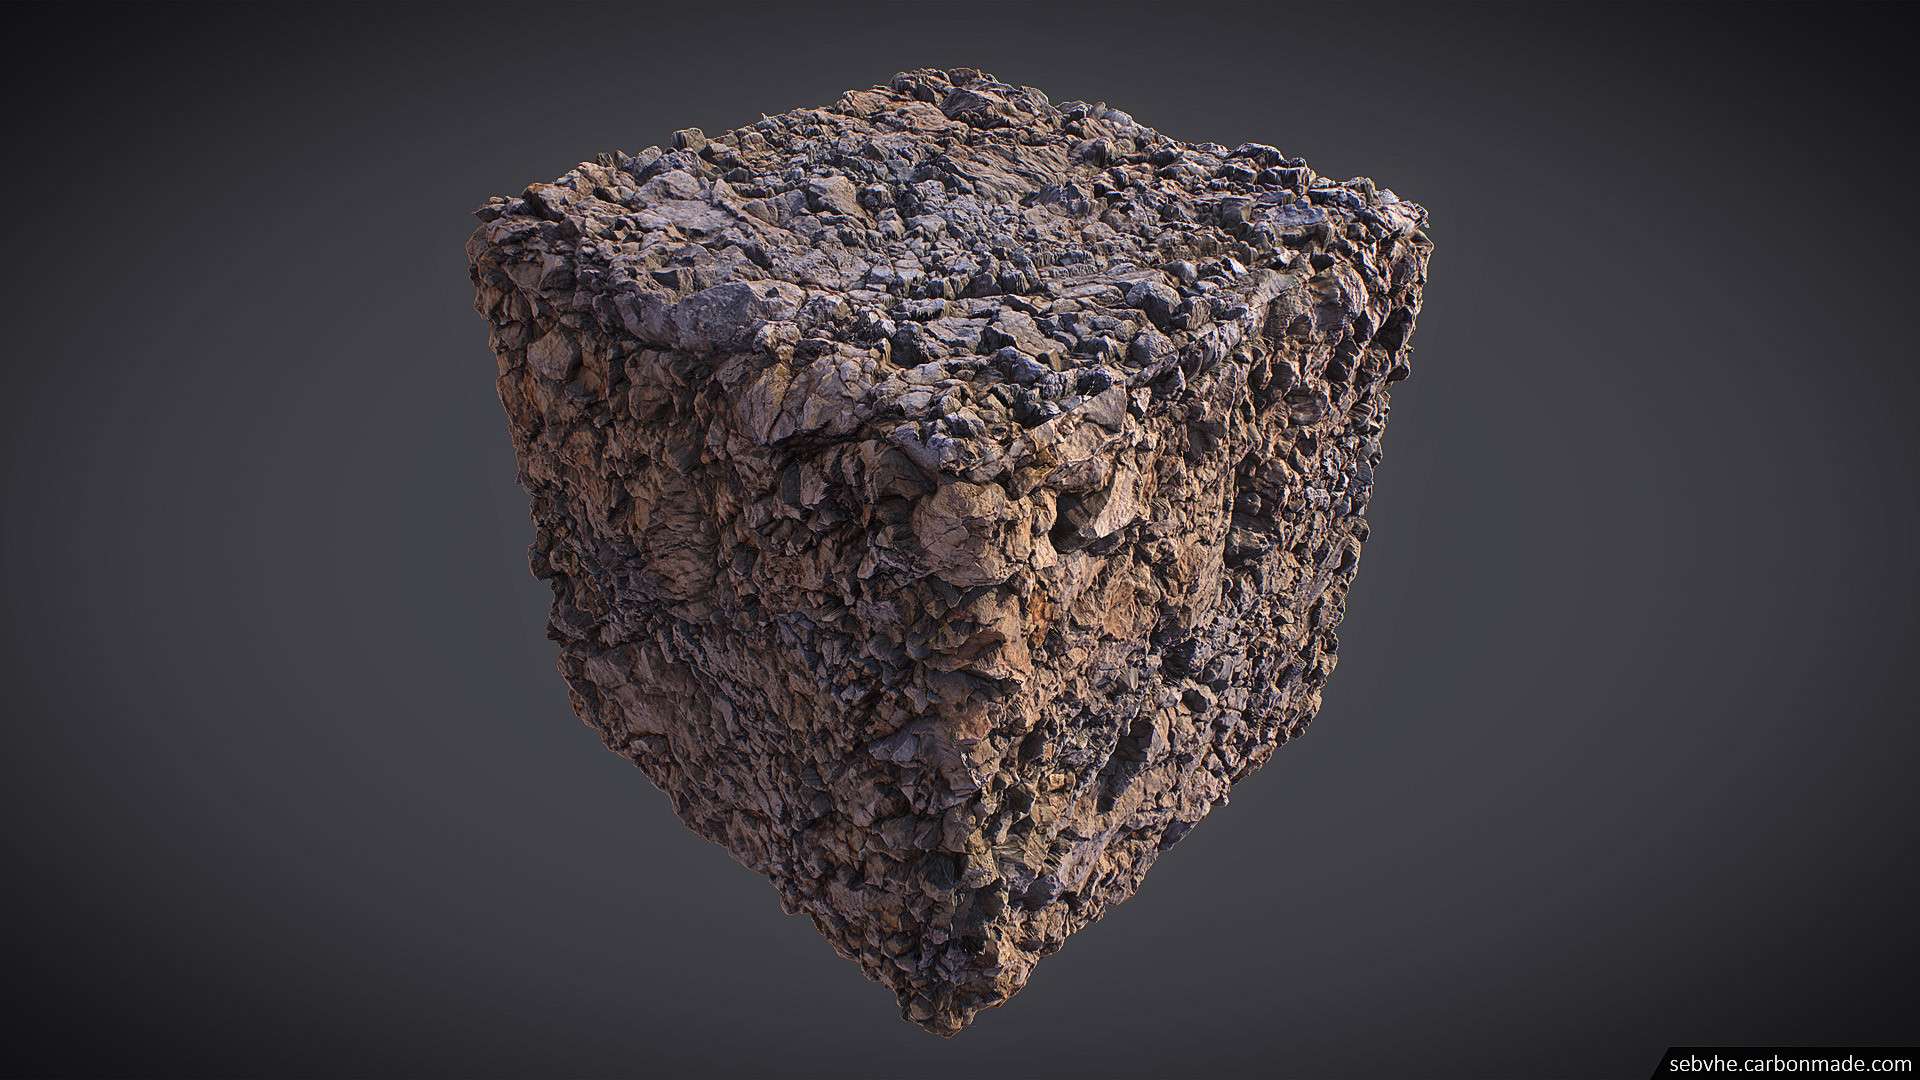 Створення каміння для ігор за допомогою фотограмметрії. Частина 2